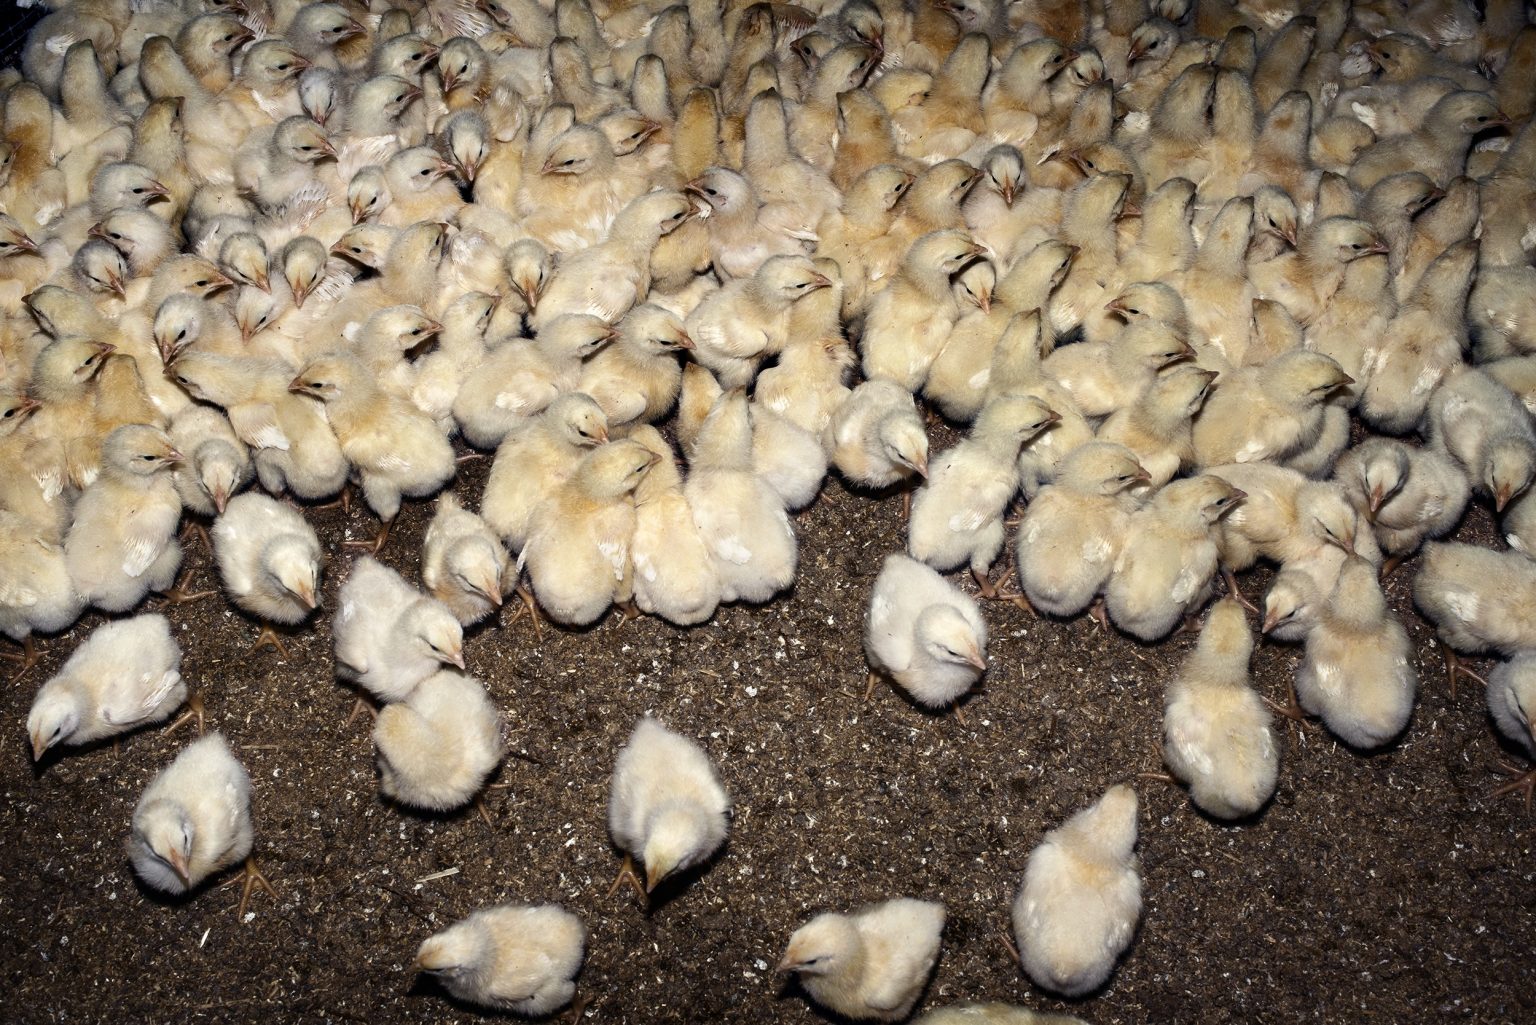 The interior of a fattening chicken farm. Emilia Romagna. May 2017.

L'interno di un allevamento di polli da ingrasso. Emilia Romagna. Gennaio 2018.